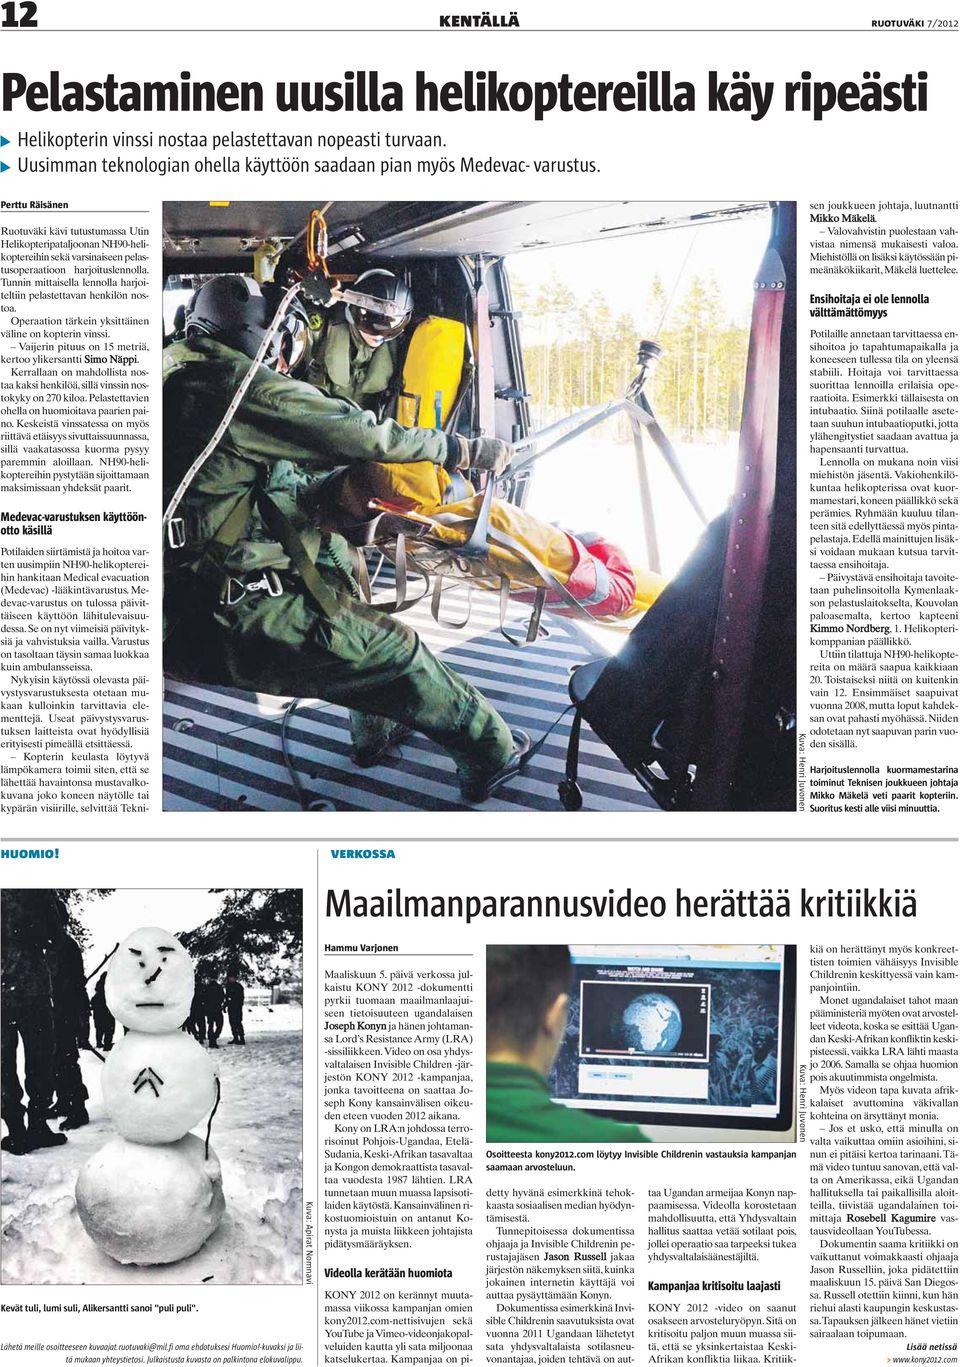 Perttu Räisänen Ruotuväki kävi tutustumassa Utin Helikopteripataljoonan NH90-helikoptereihin sekä varsinaiseen pelastusoperaatioon harjoituslennolla.